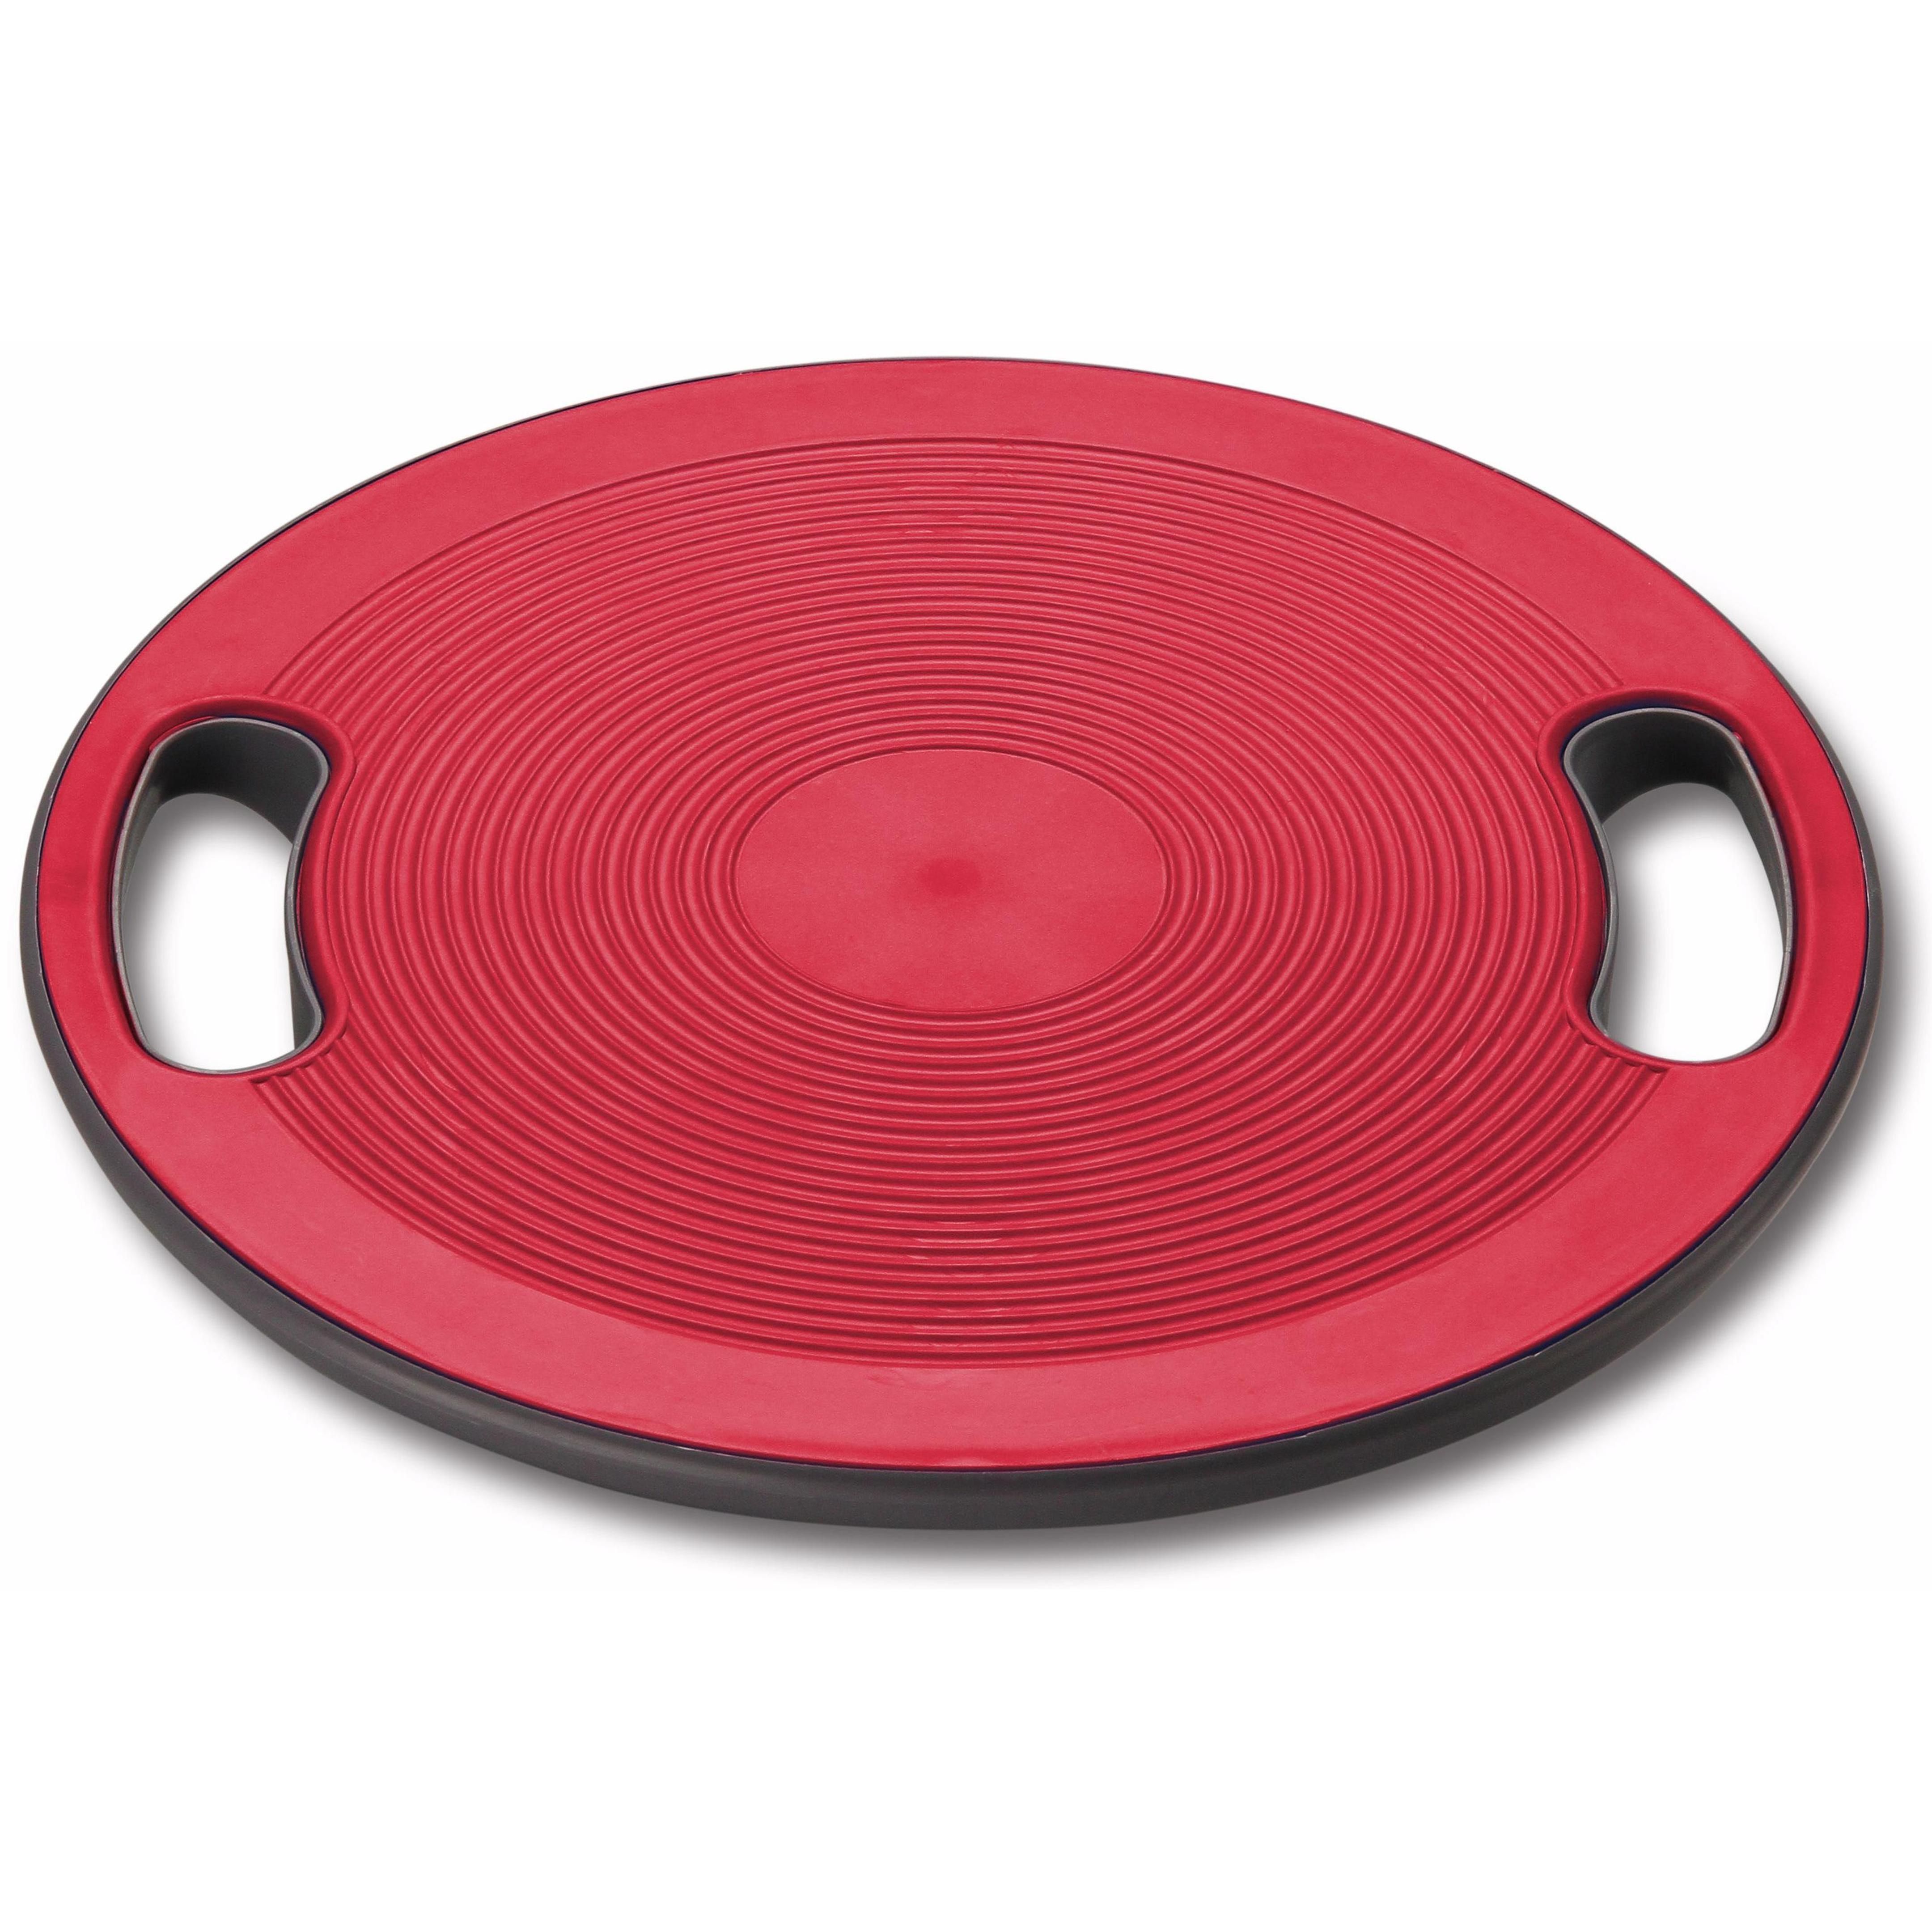 Disco de Equilibrio Plástico INDIGO 40*10 cm Rojo-Gris